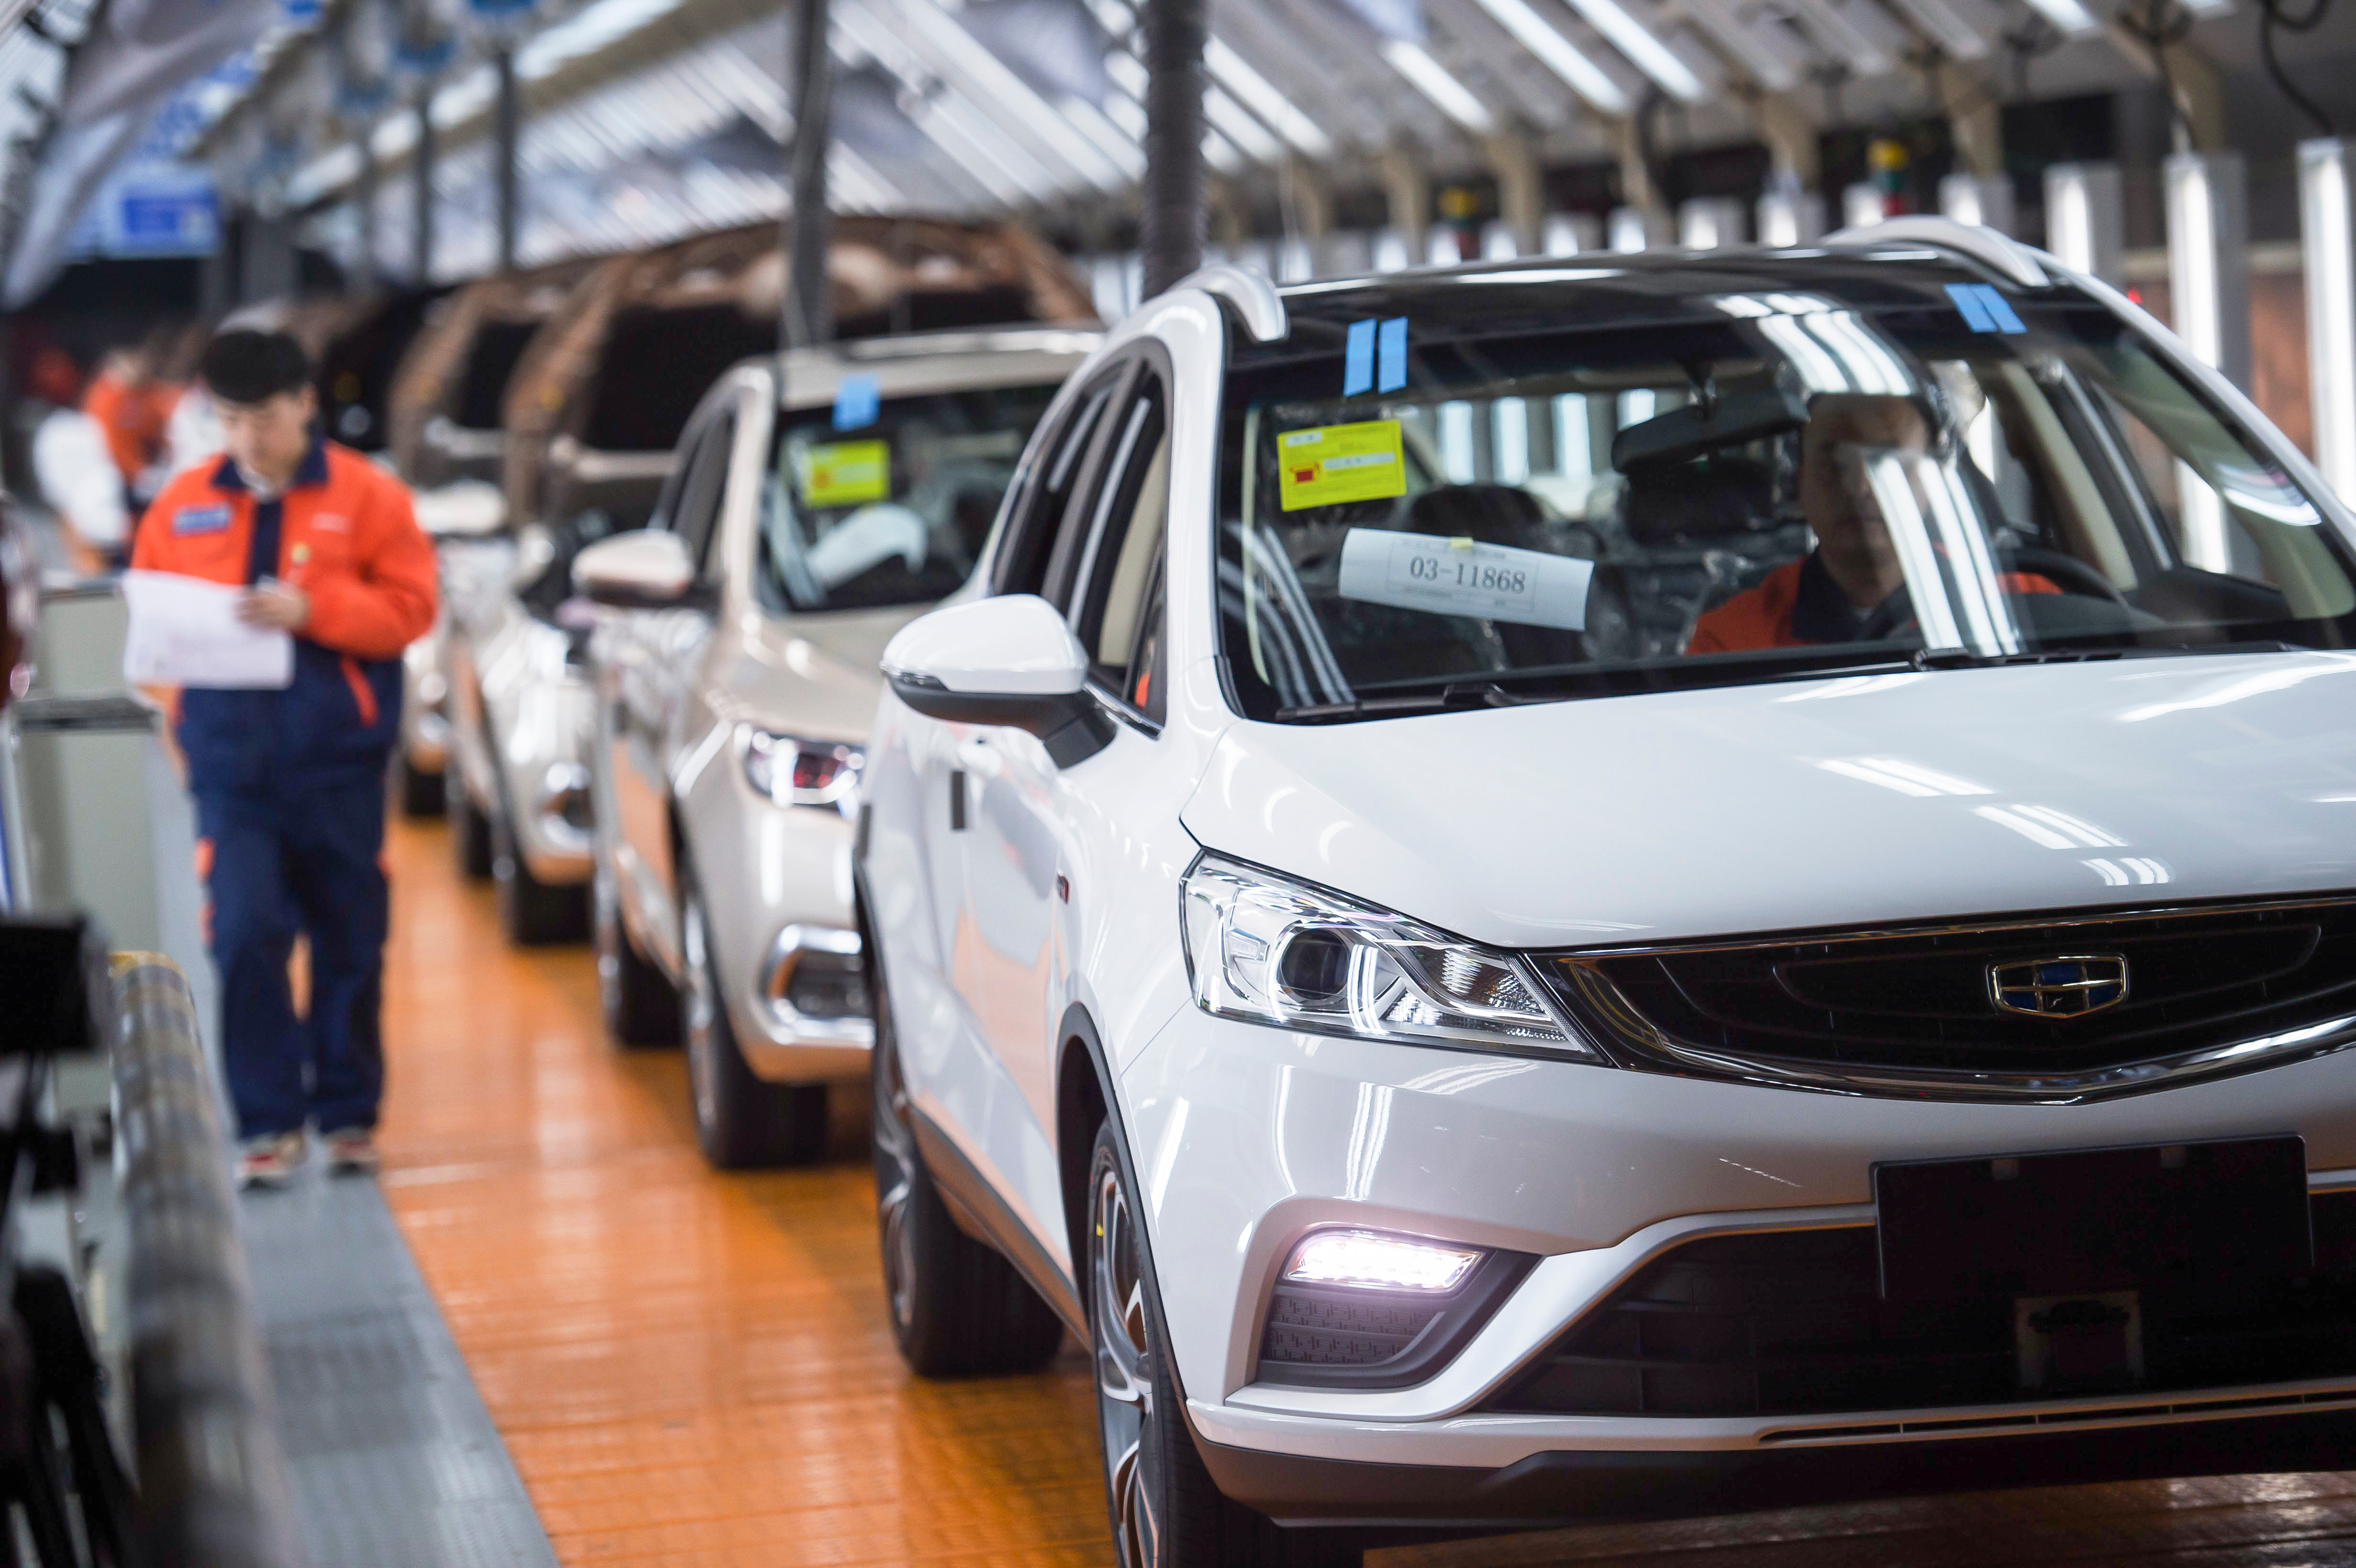 ยอดผลิตรถยนต์ในประเทศเดือน ส.ค. 2564 ต่ำสุดในรอบ 13 เดือน